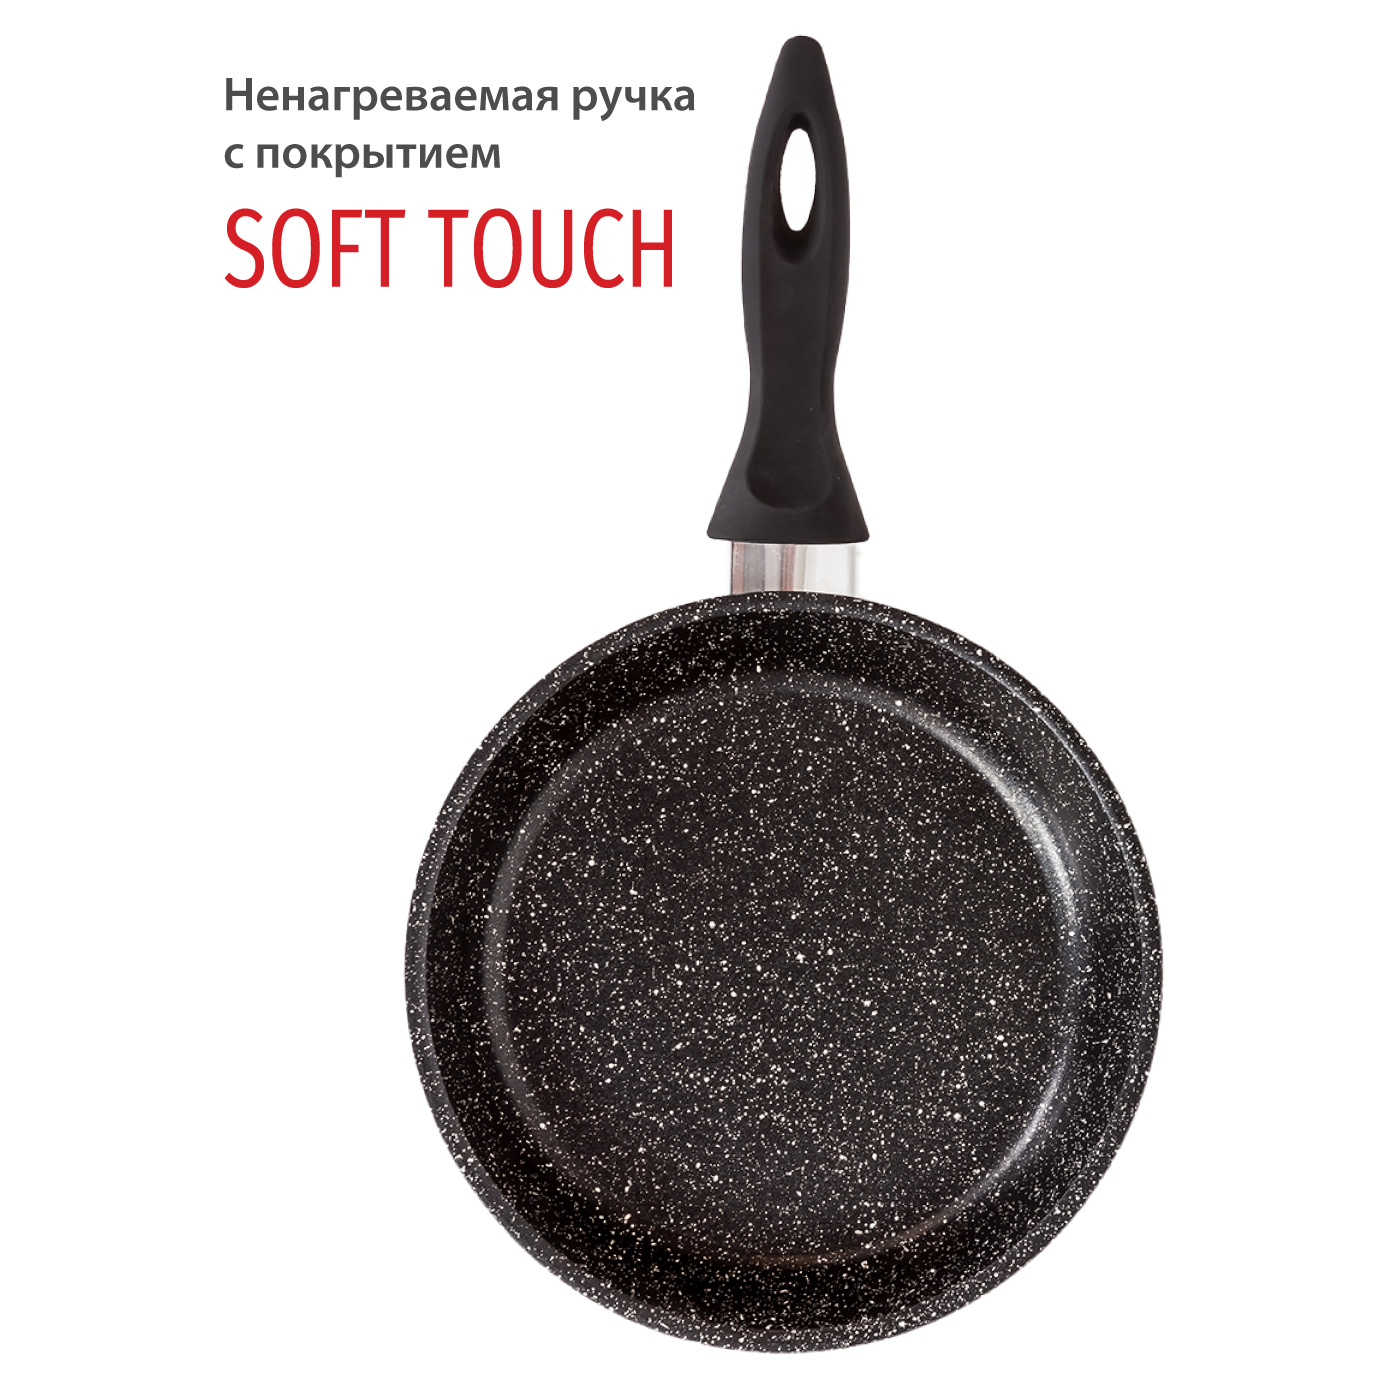 Картинка Сковорода Olivetti FP720 (20 см) по разумной цене купить в интернет магазине mall.su